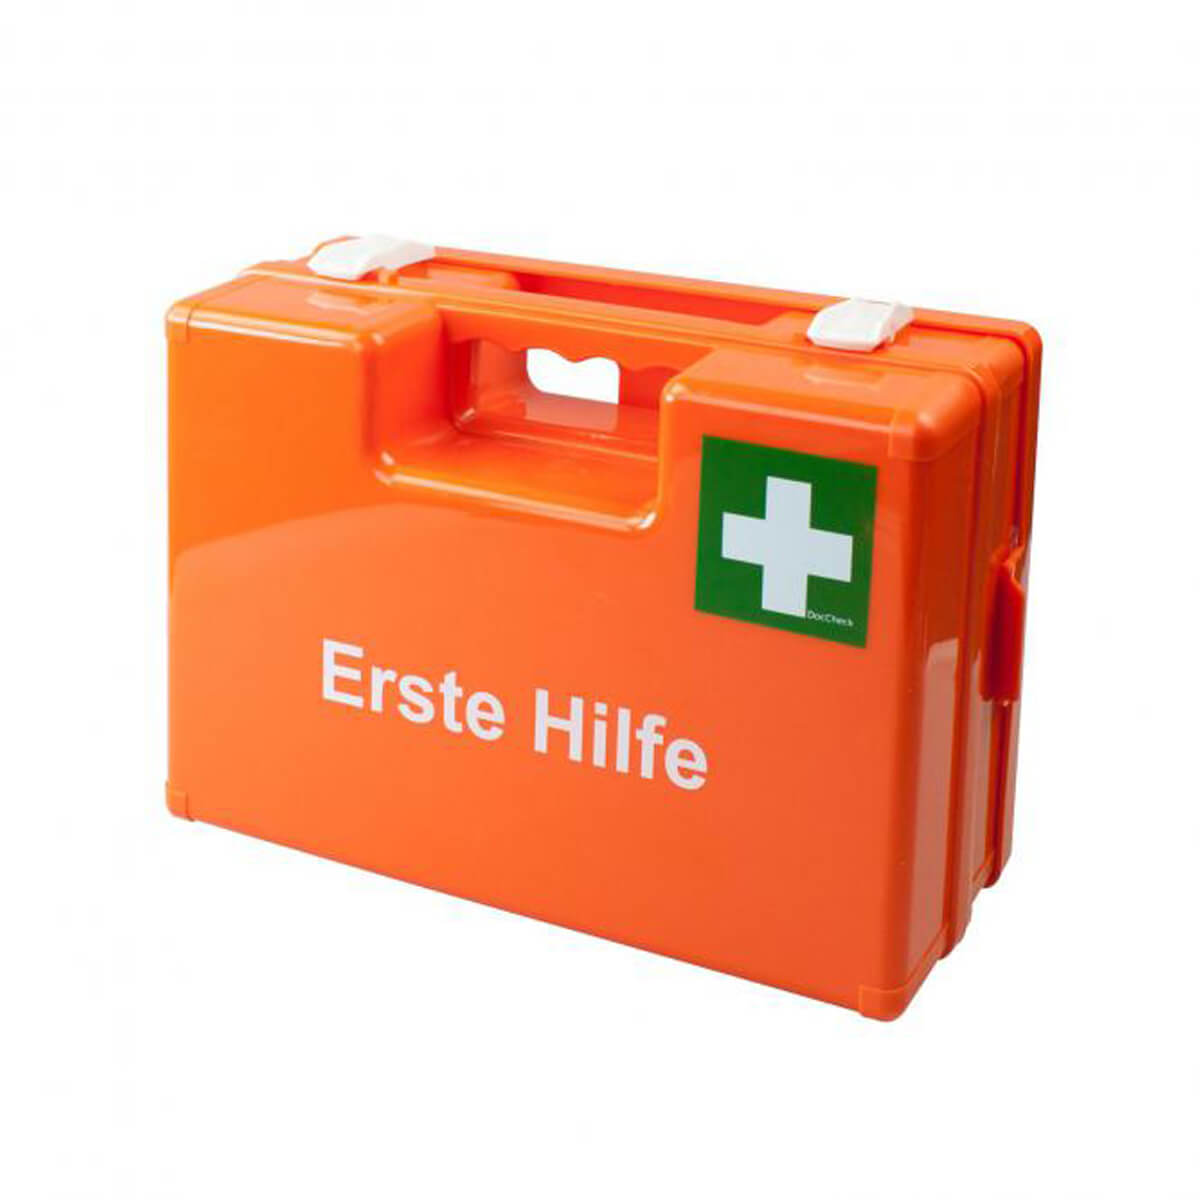 Erste-Hilfe-Koffer & Verbandskasten bestellen